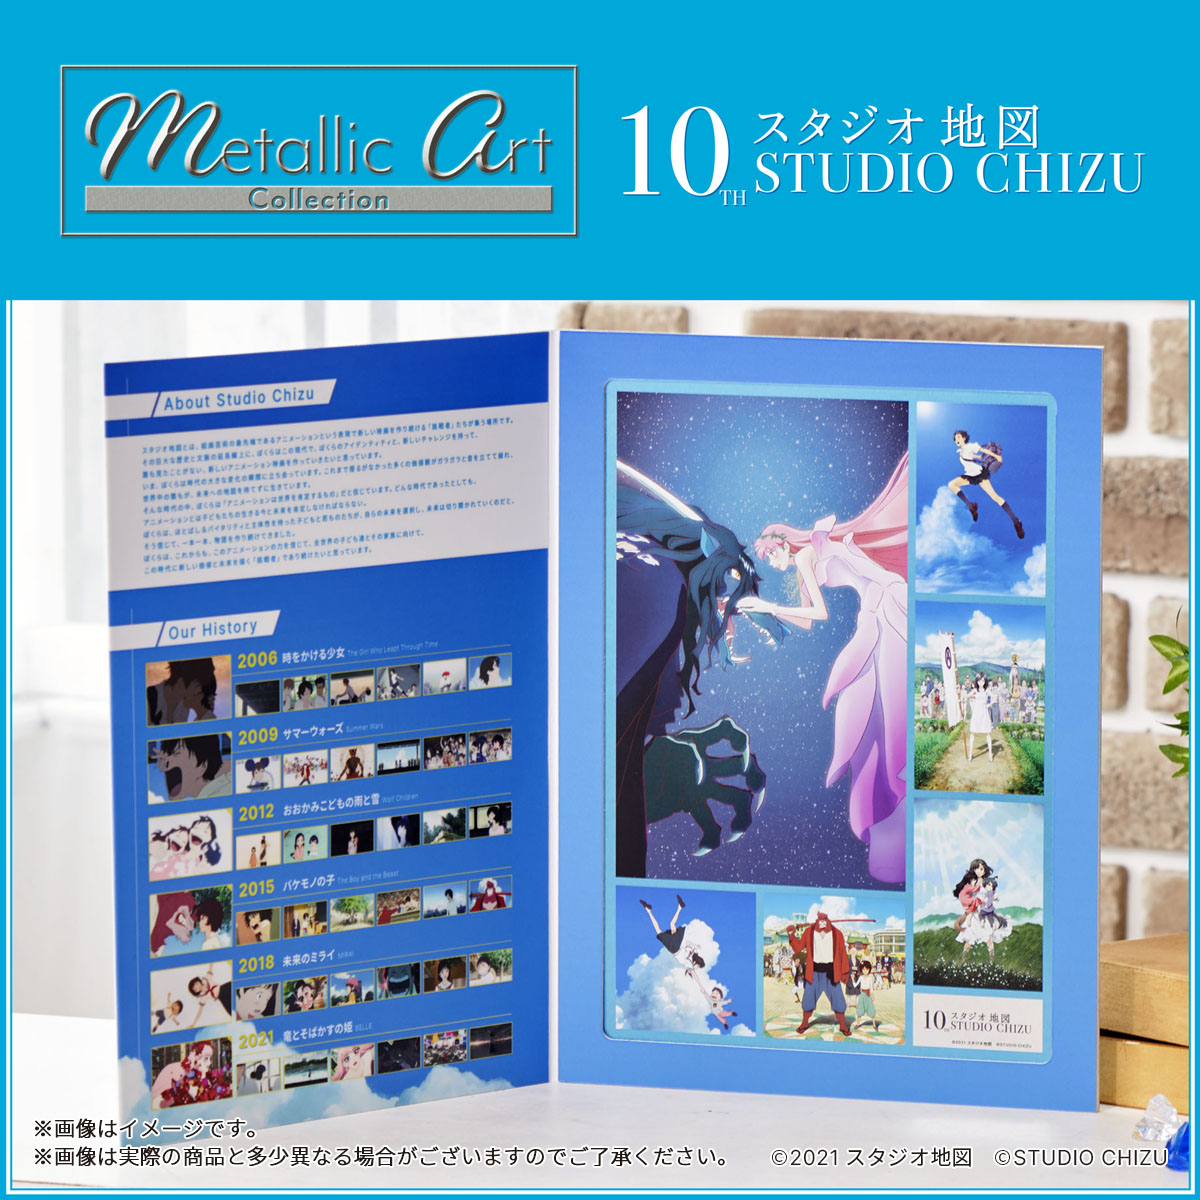 細田守監督最新作 竜とそばかすの姫 を含む全6作品を集結させたスタジオ地図10周年記念メタルポスターが登場 株式会社bandai Spirits ネット戦略室のプレスリリース